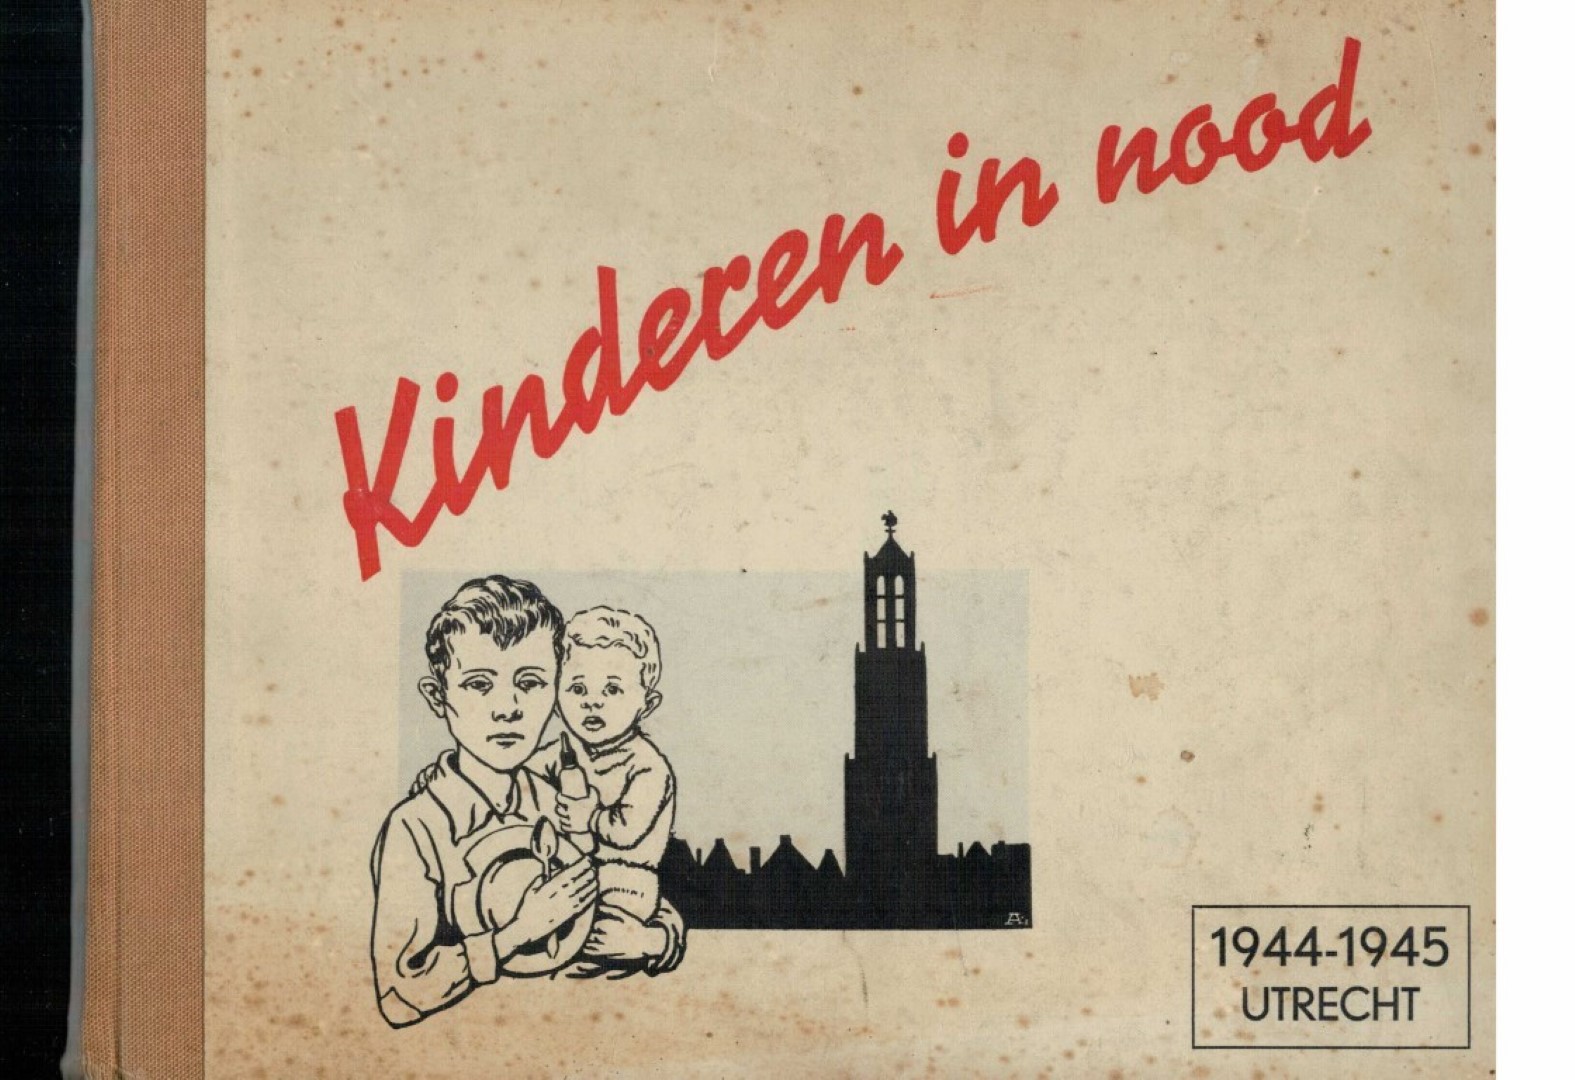 Het Bureau Voor Bedrijfseconomische Adviezen Te Bilthoven mmv Prof. Dr. H.W. Julius (oogarts), H.C. Overbosch (arts), Dr. M.H. Tromp (arts), H. ten Bokkel Huinink (arts), enz. - Kinderen in nood 1944-1945. De kindervoeding in de stad Utrecht in de nood-winter 1944-1945..